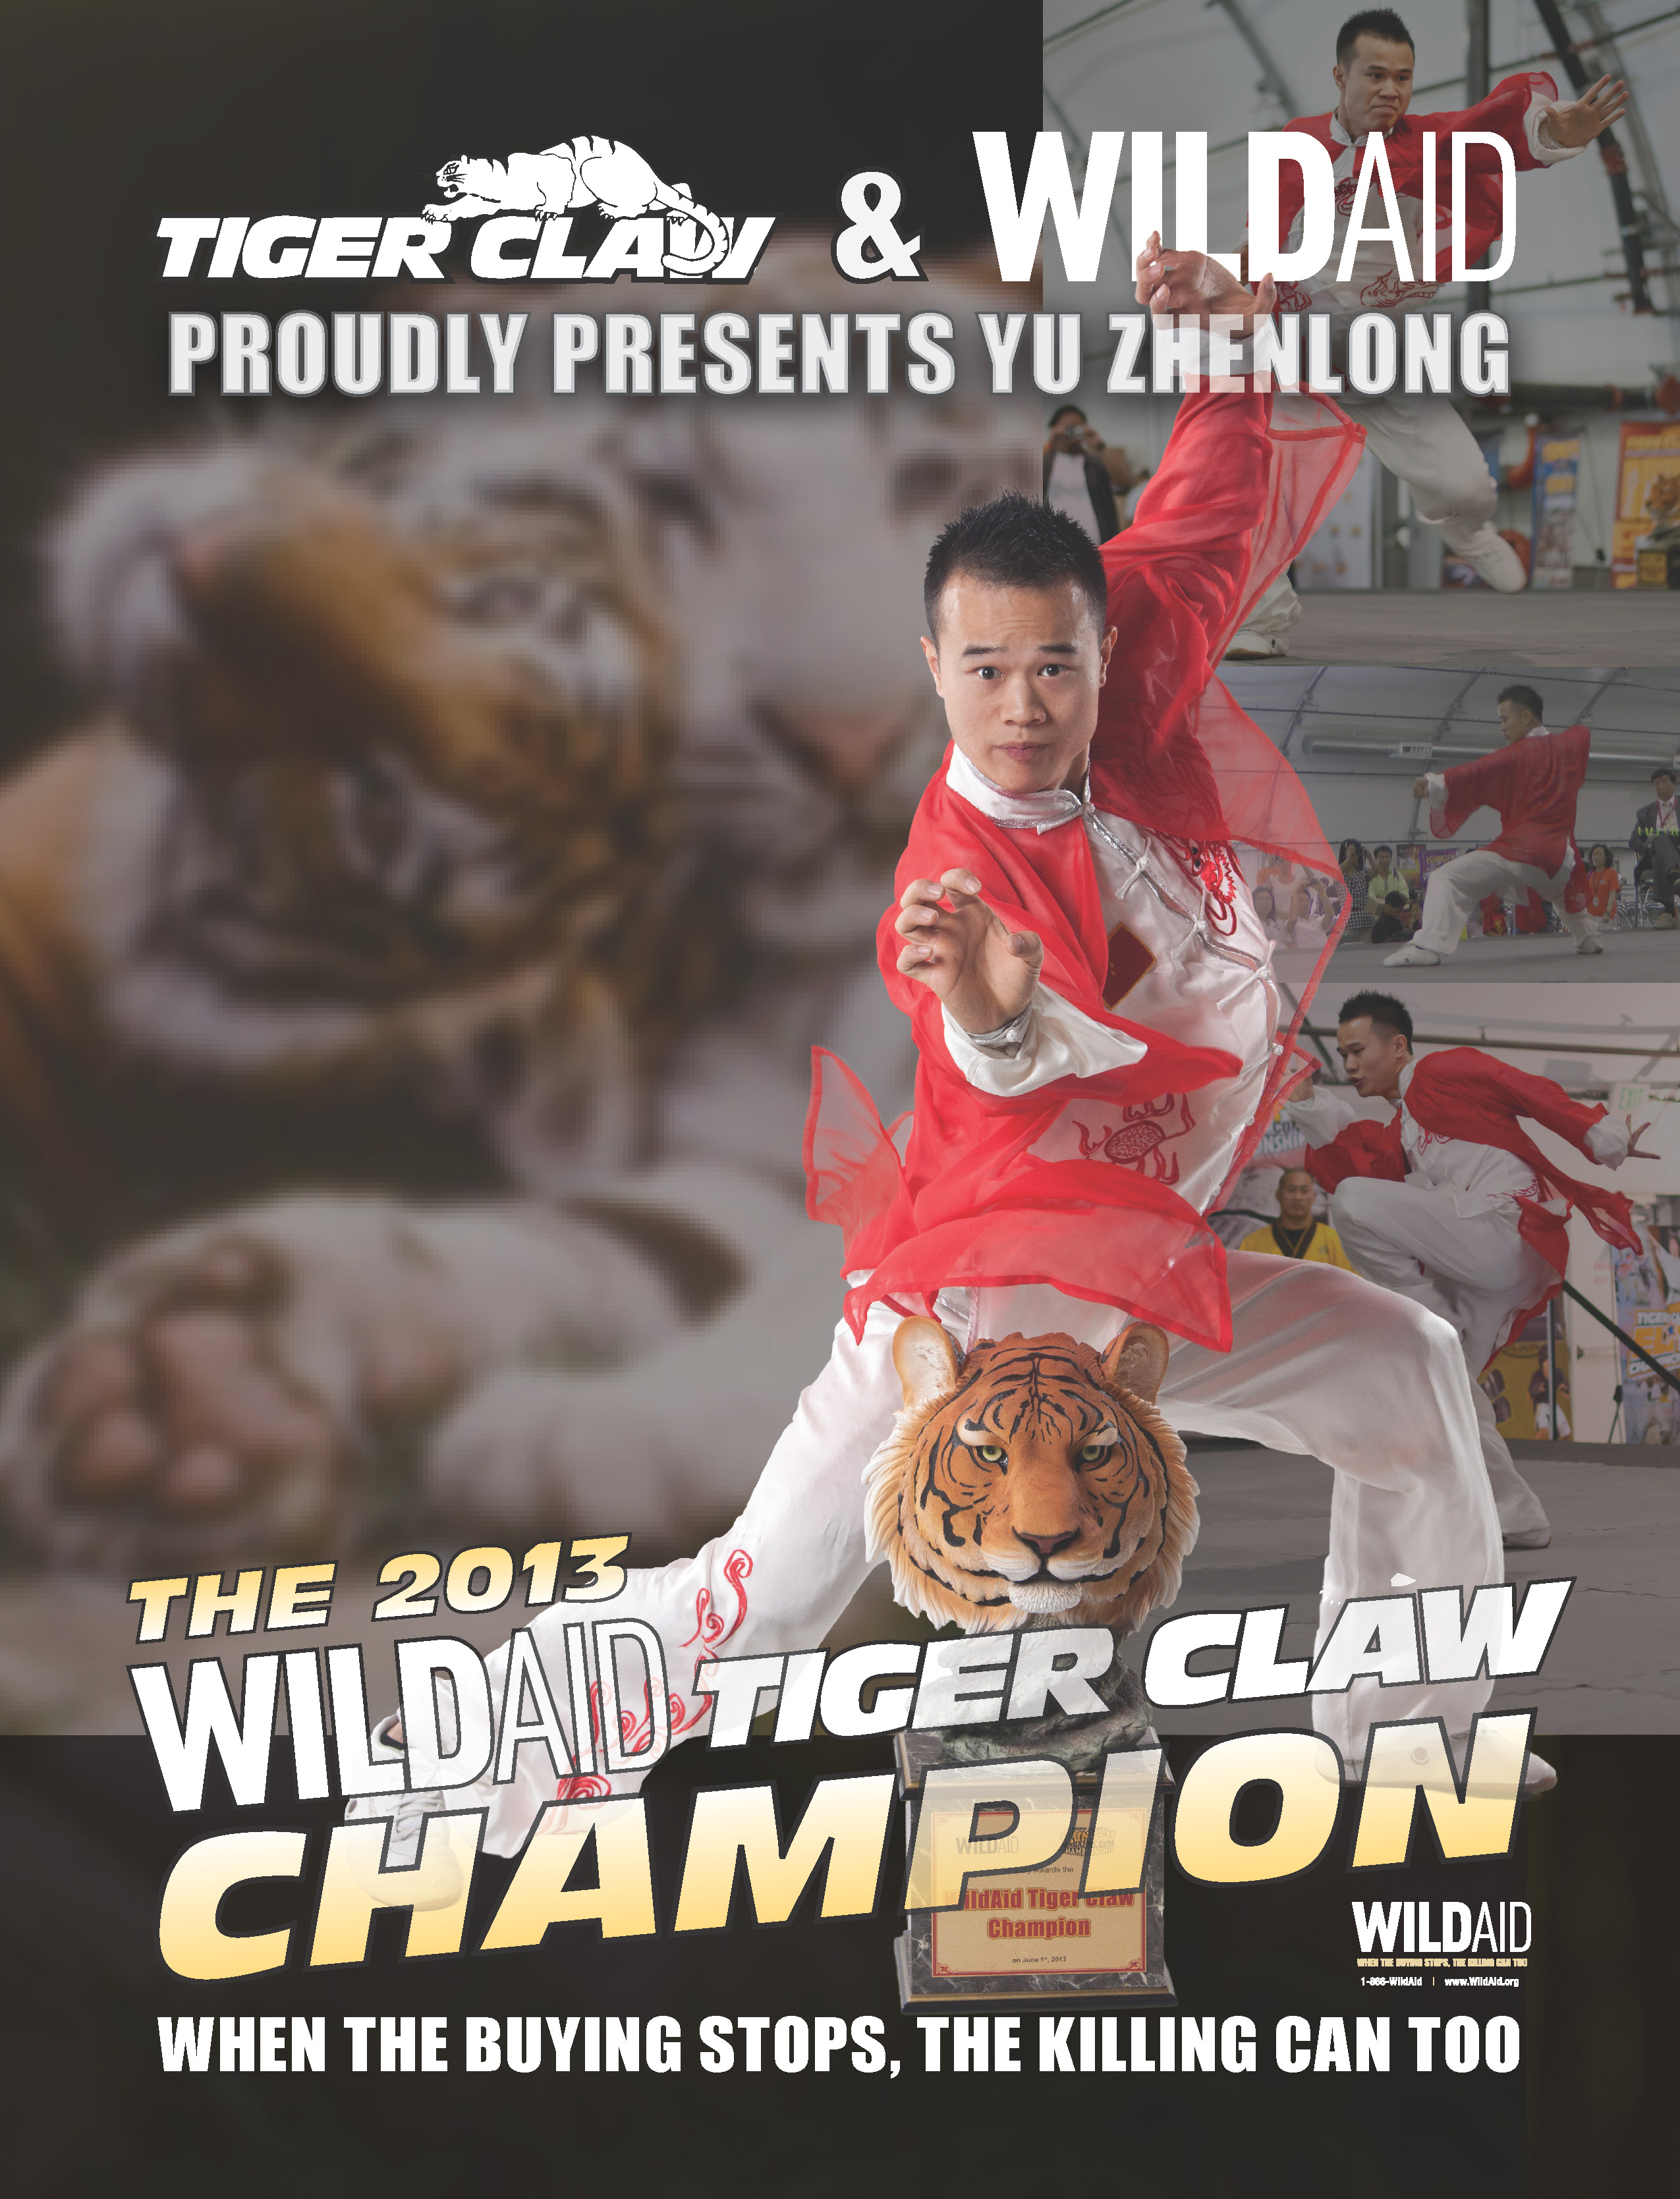 WildAid Tiger Claw Champion